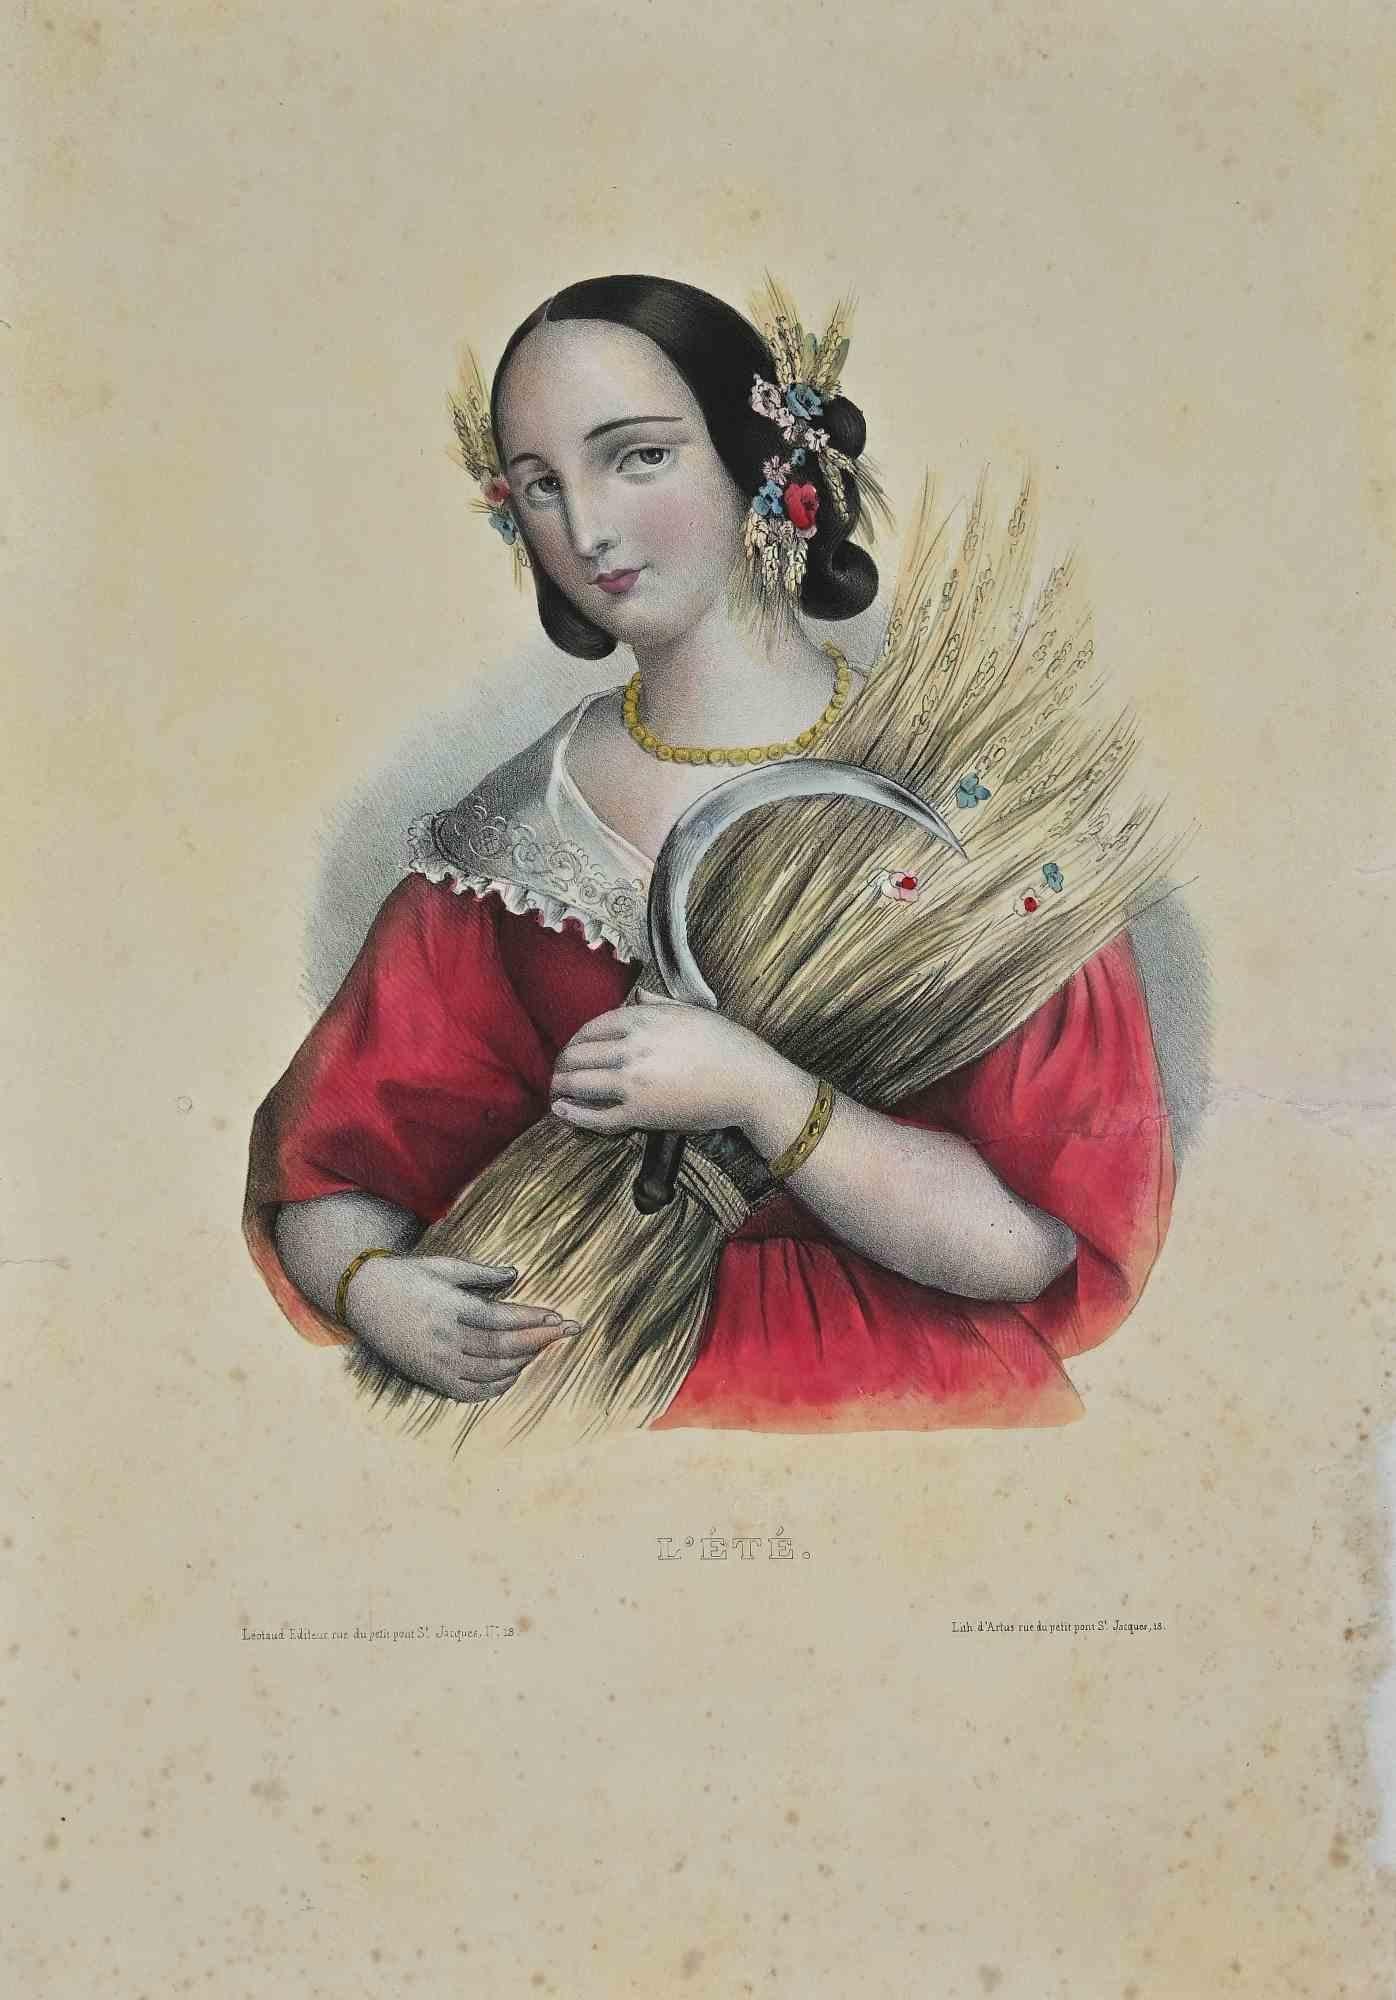 Unknown Portrait Print - L'été - Original Lithograph - Late 19th Century